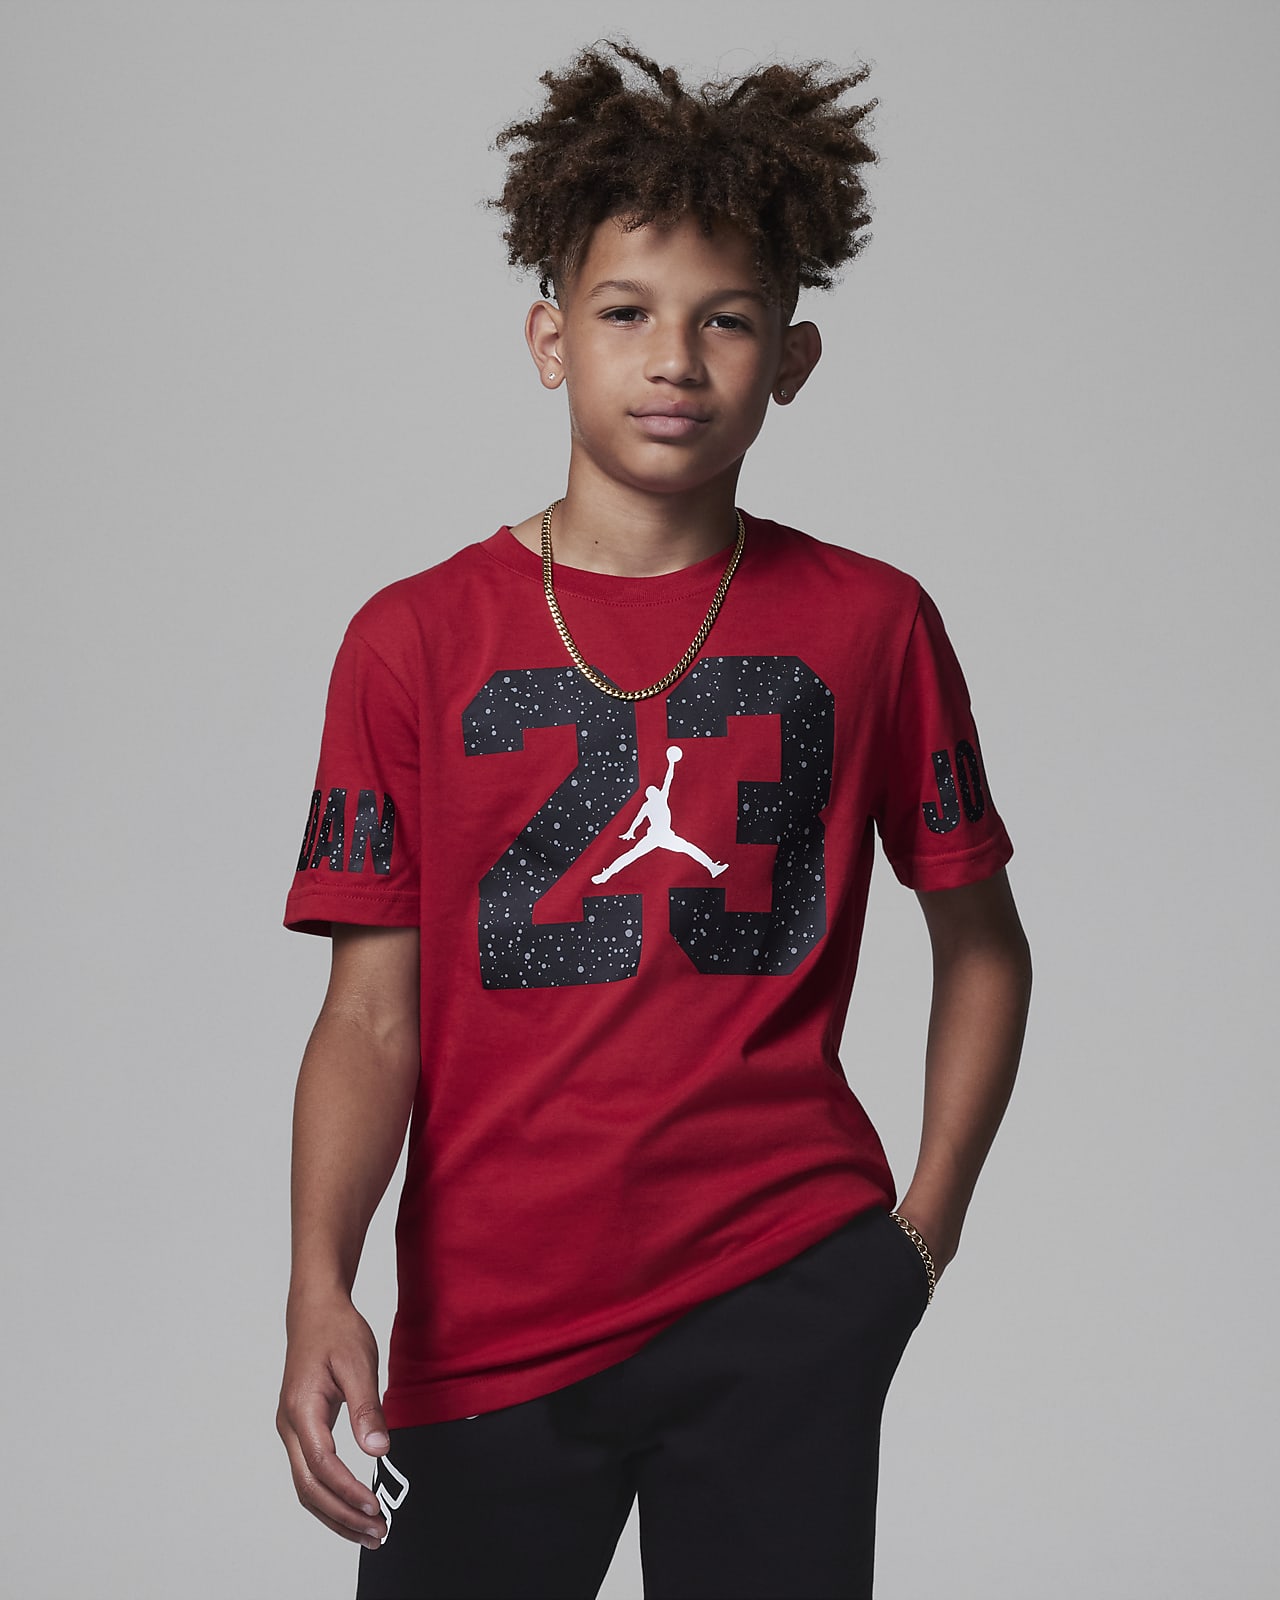 Jordan 23 Speckled Tee Older Kids' T-Shirt